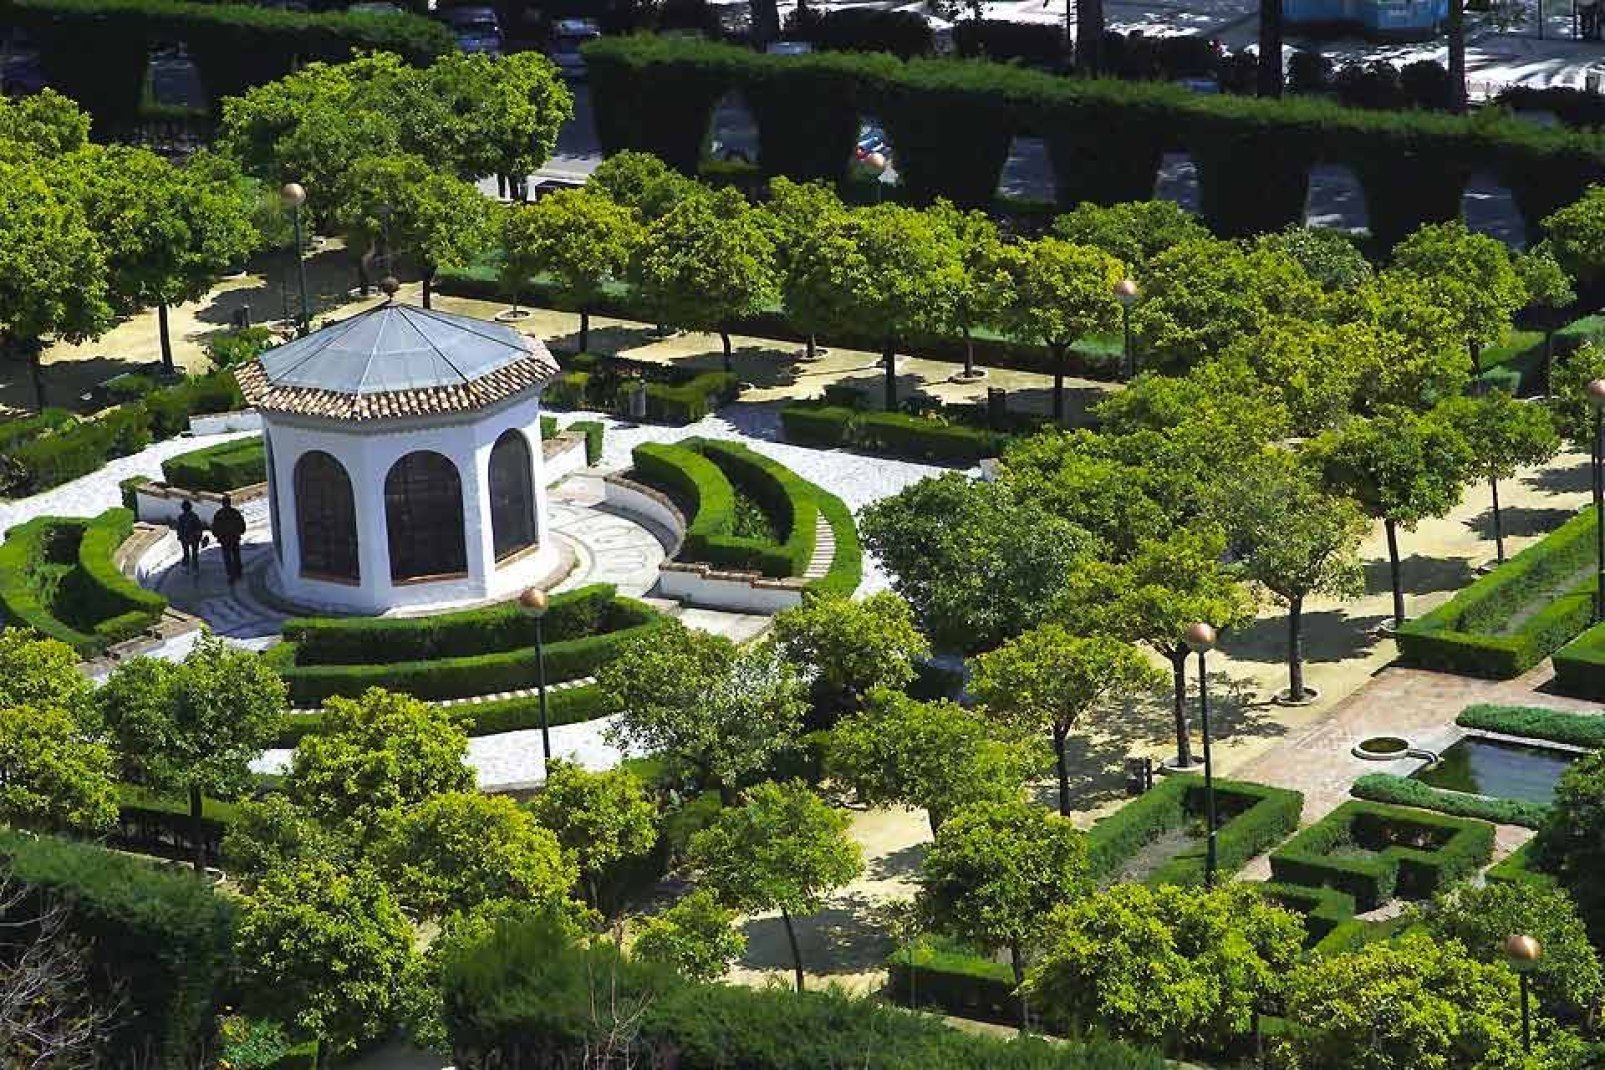 Es handelt sich um die schönste und größte tropische Parkanlage Europas. Dieser botanische Garten liegt nur 5 km von Malaga entfernt - ein unvergesslicher Ausflug!